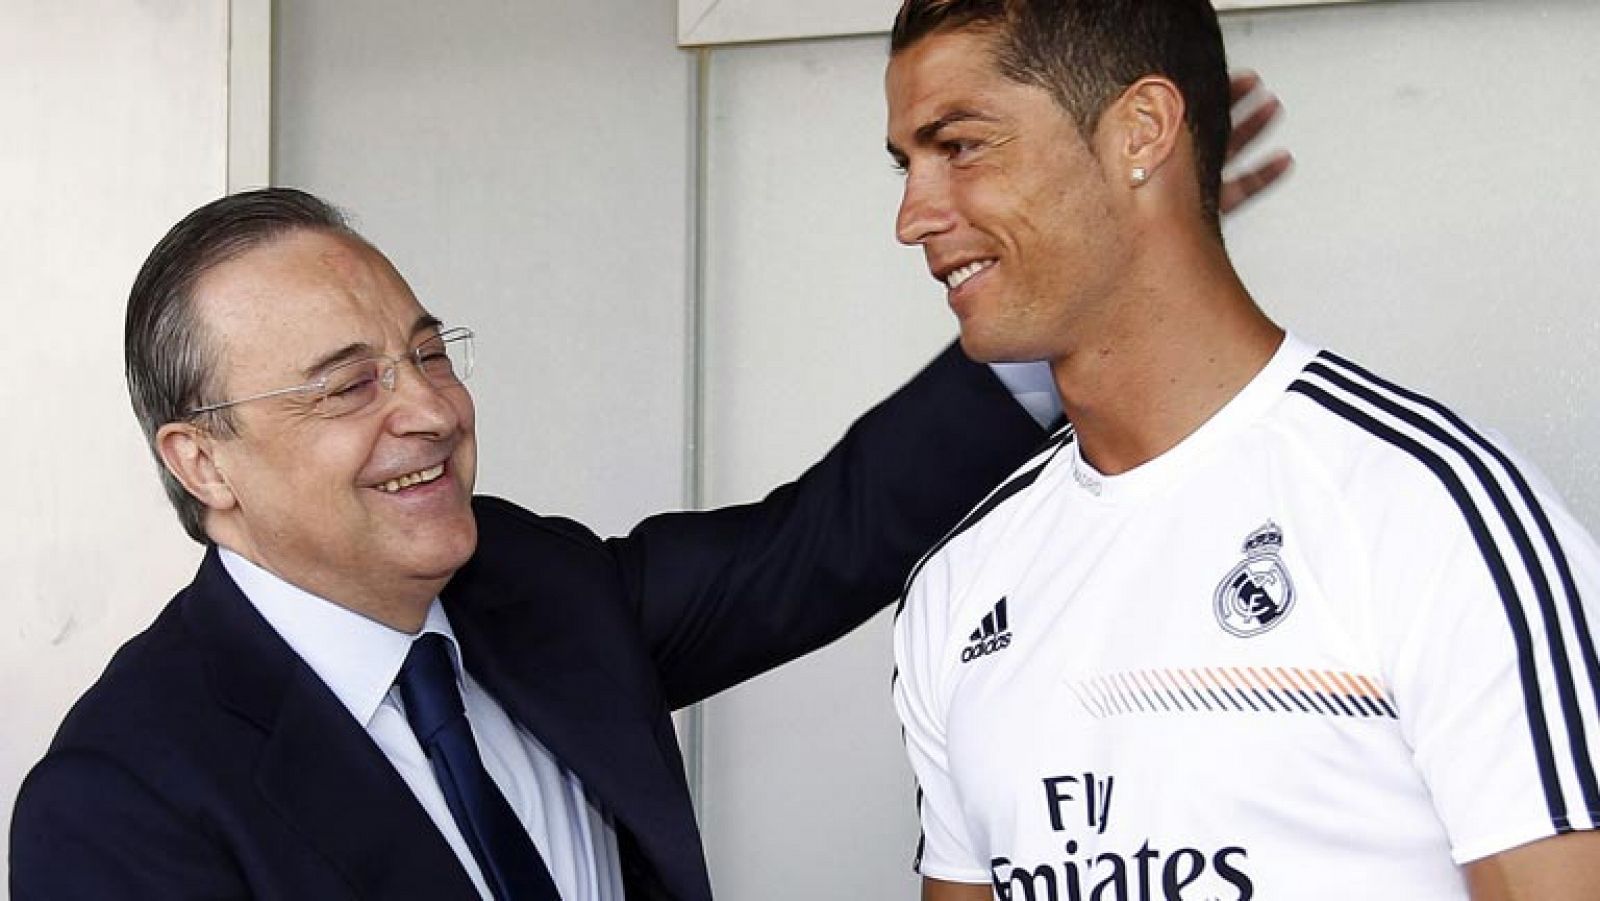 Telediario 1: Florentino Pérez: "100 millones por Bale es mucho" | RTVE Play